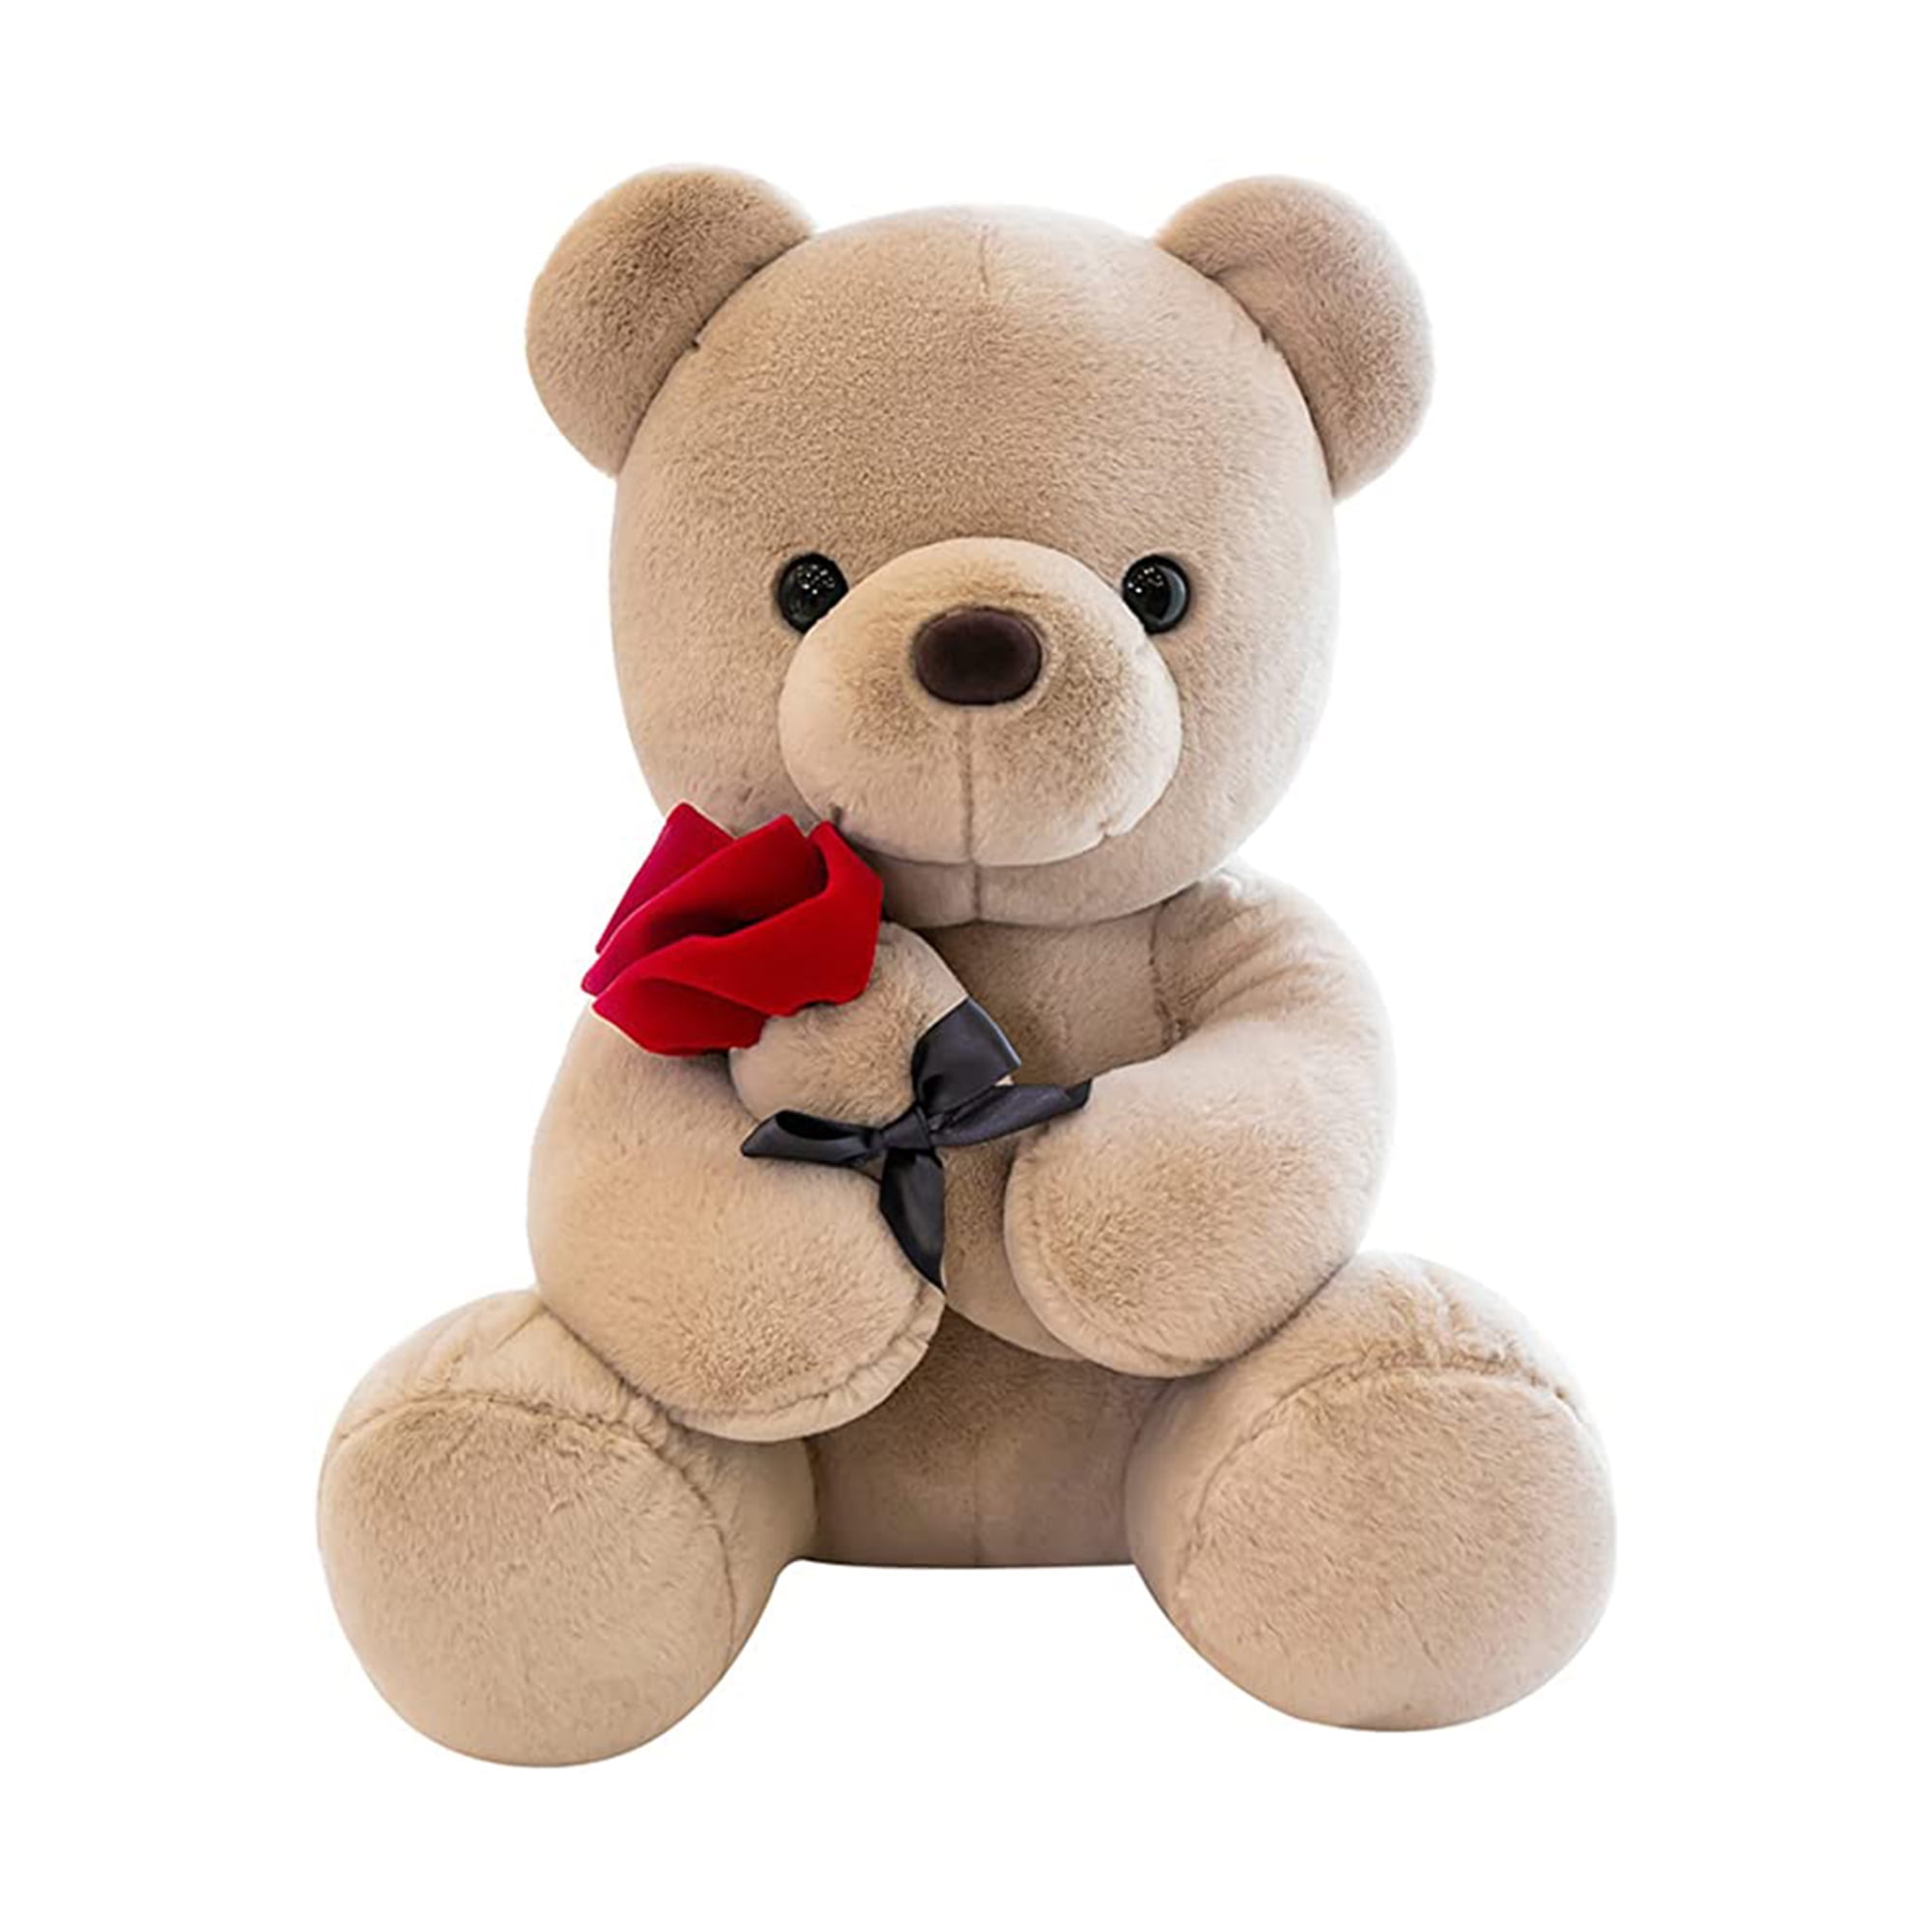 25cm Kawaii Teddy Bear Light Brown Stuffed Plush Soft Present Kids Children Play 